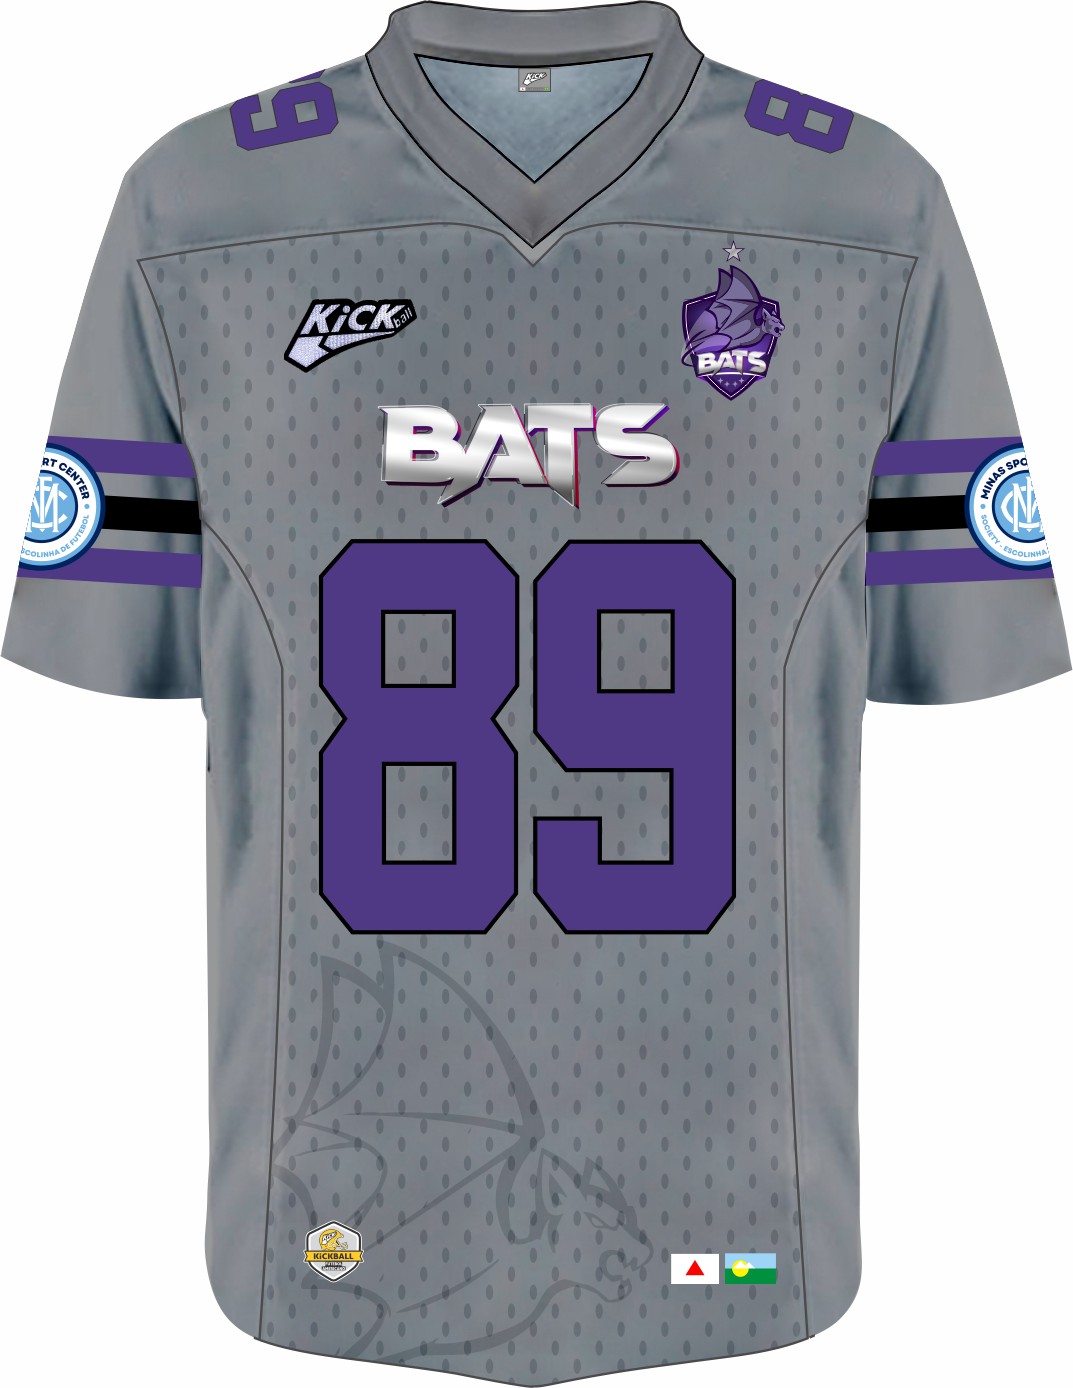 Camisa Of. Bats Futebol Americano Jersey Plus Inf. Mod3